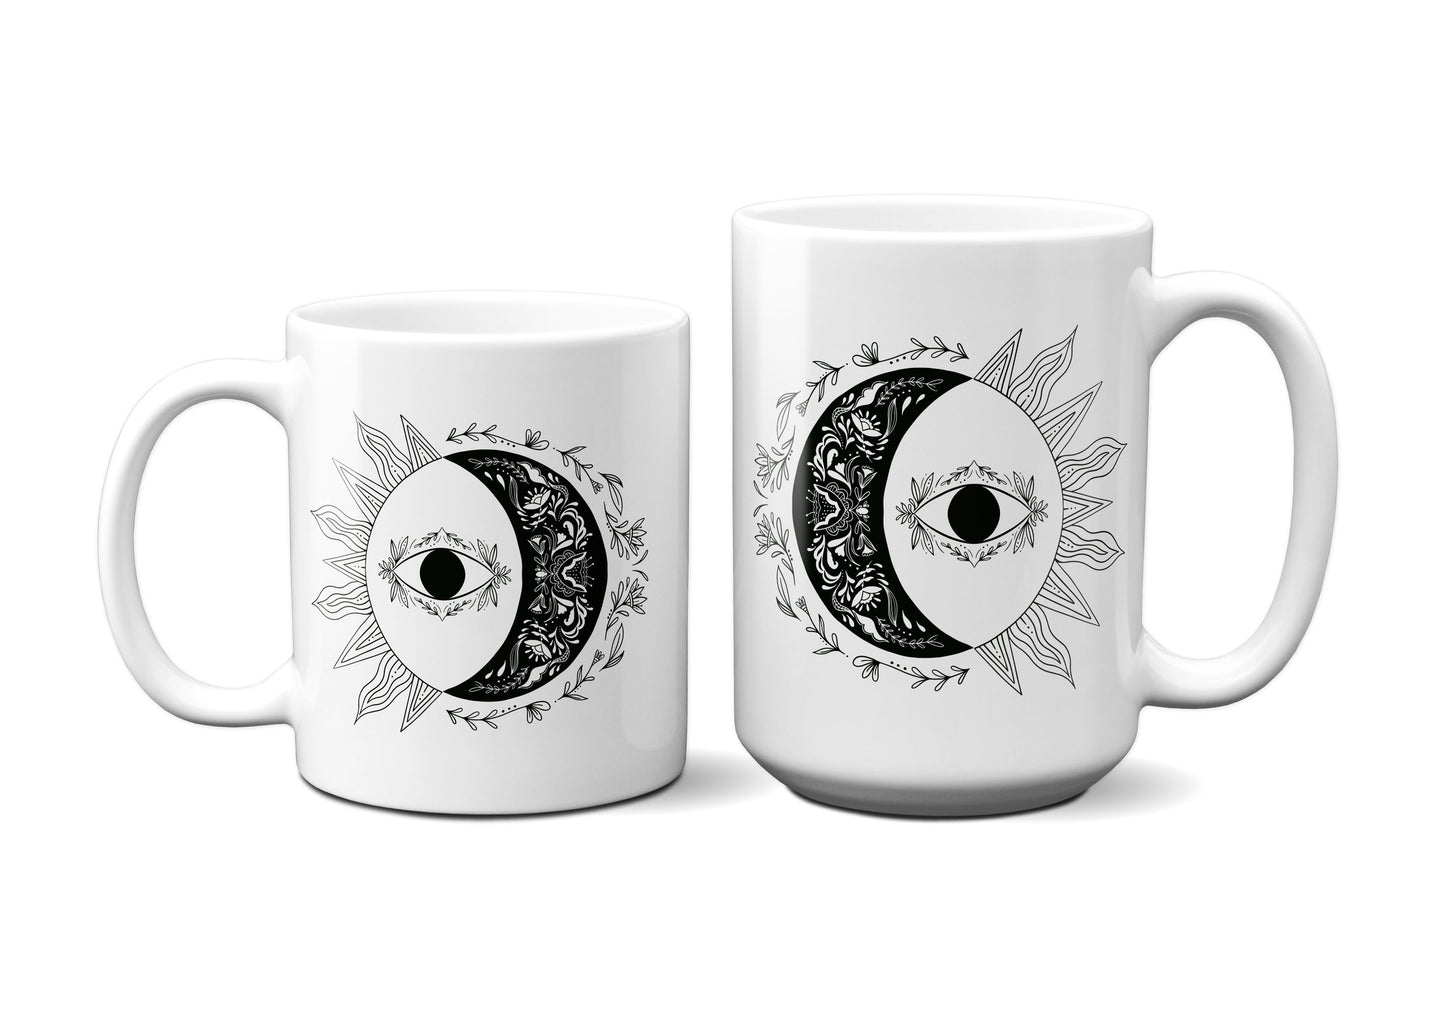 Celestial Bodies Ceramic Mug